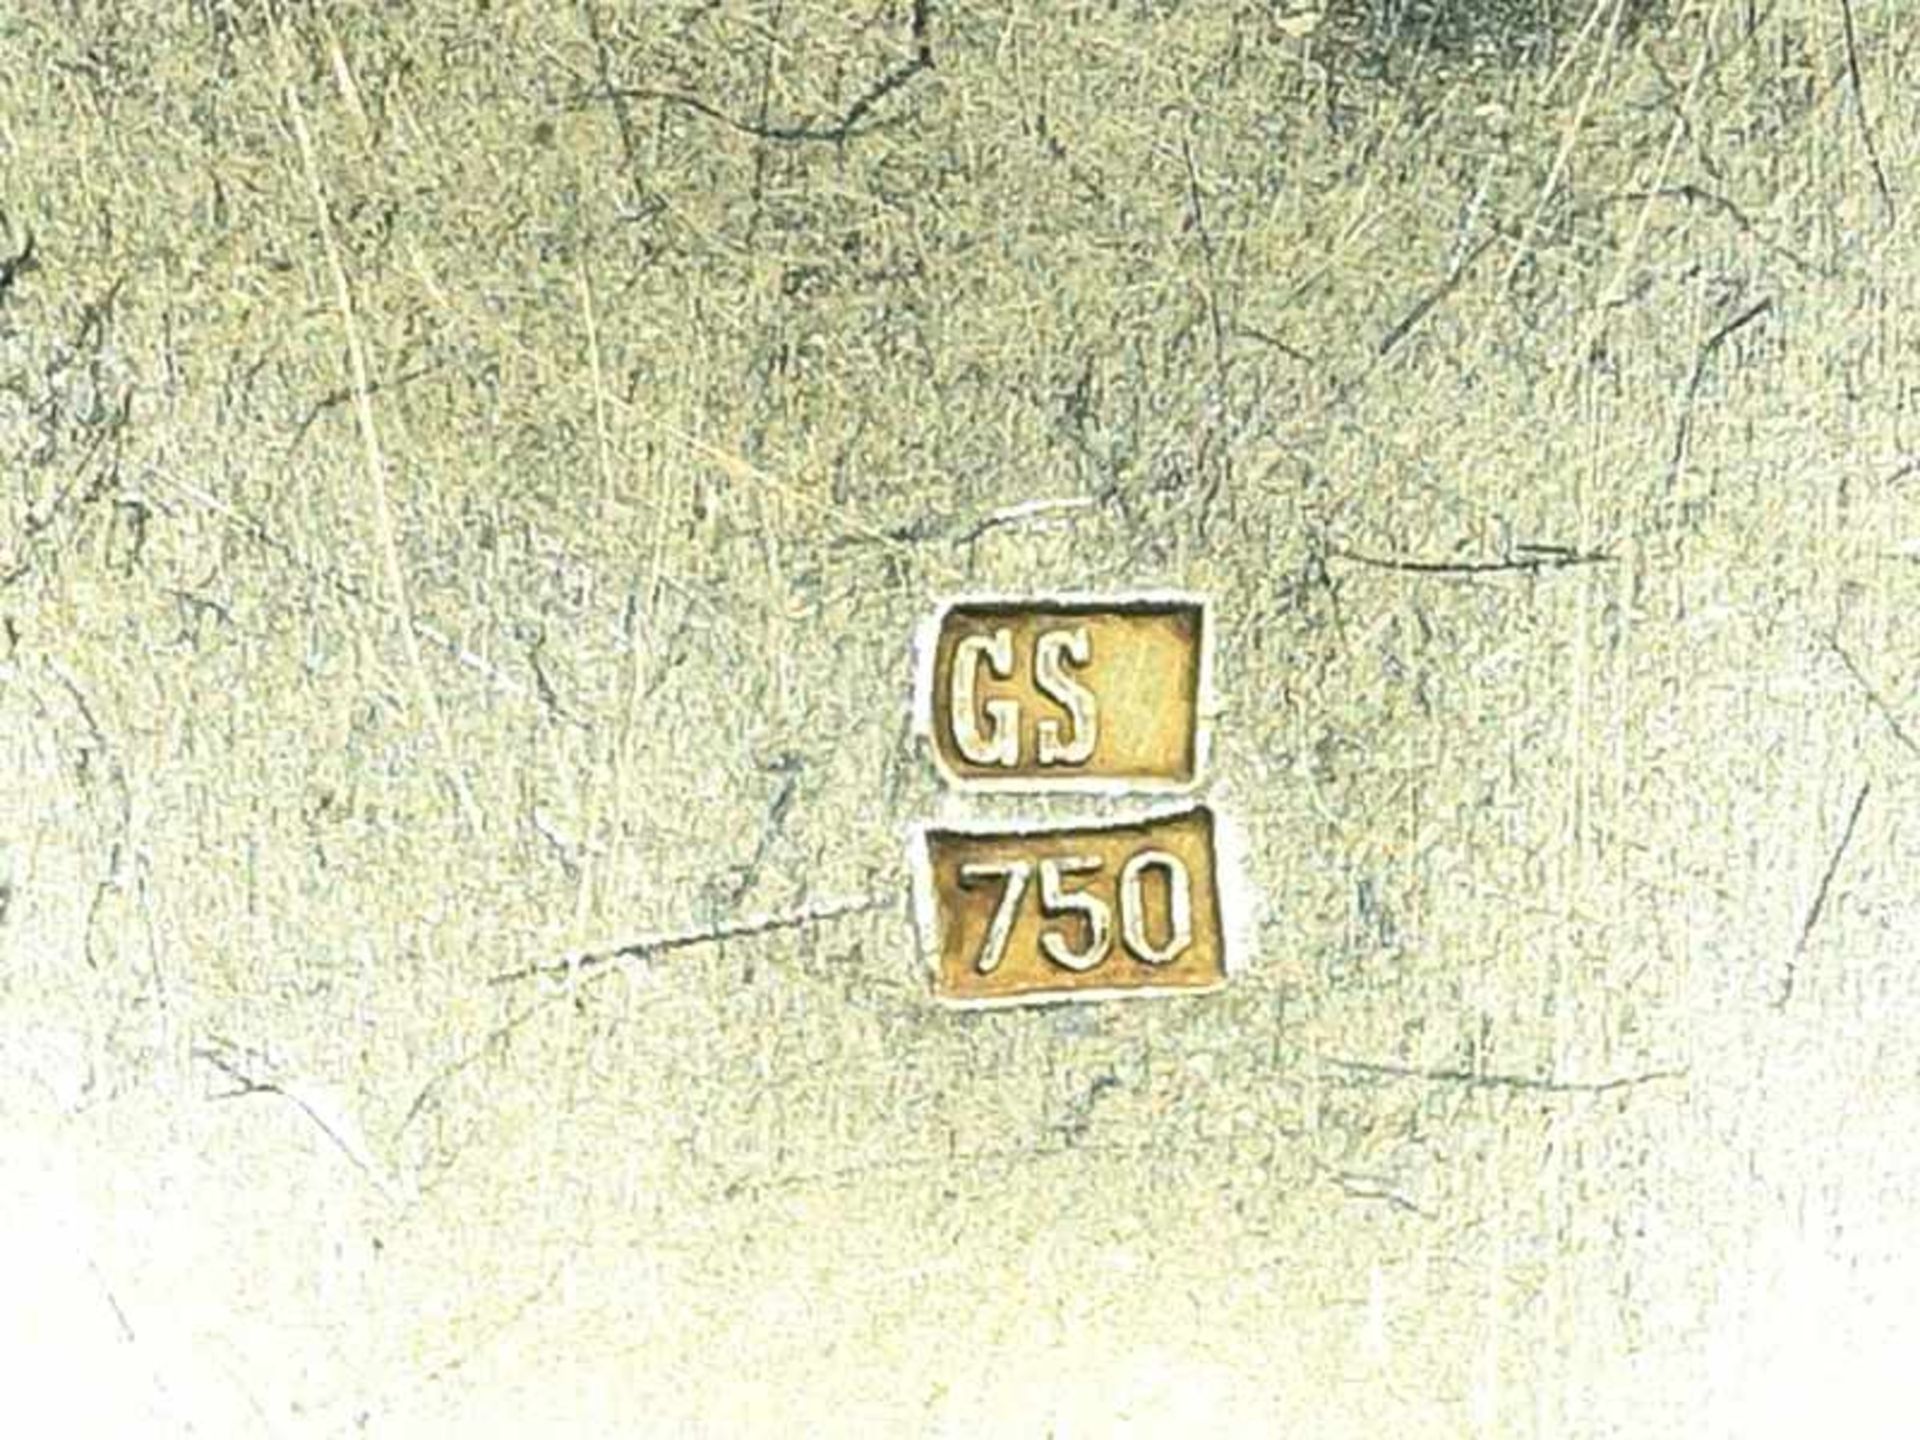 Armband mit Opal-Matrix, Goldschmiede Schleede, Hamburg, 21. JH. 750/- Gelb- und Weißgold. - Bild 4 aus 5